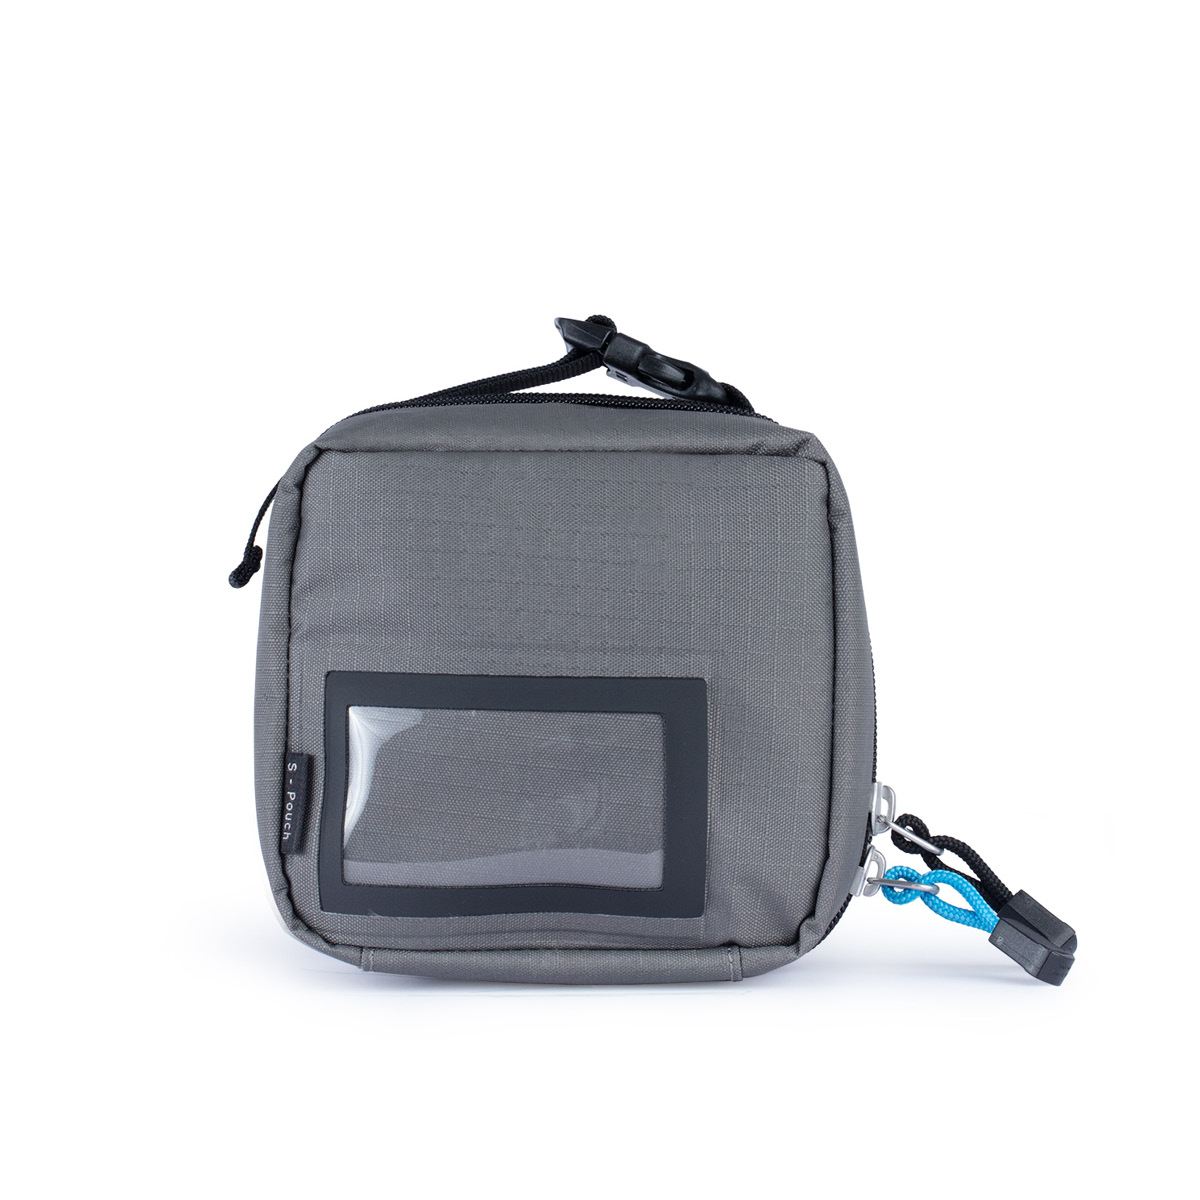 F-Stop Accessory Pouch Small Grey/Black Zipper